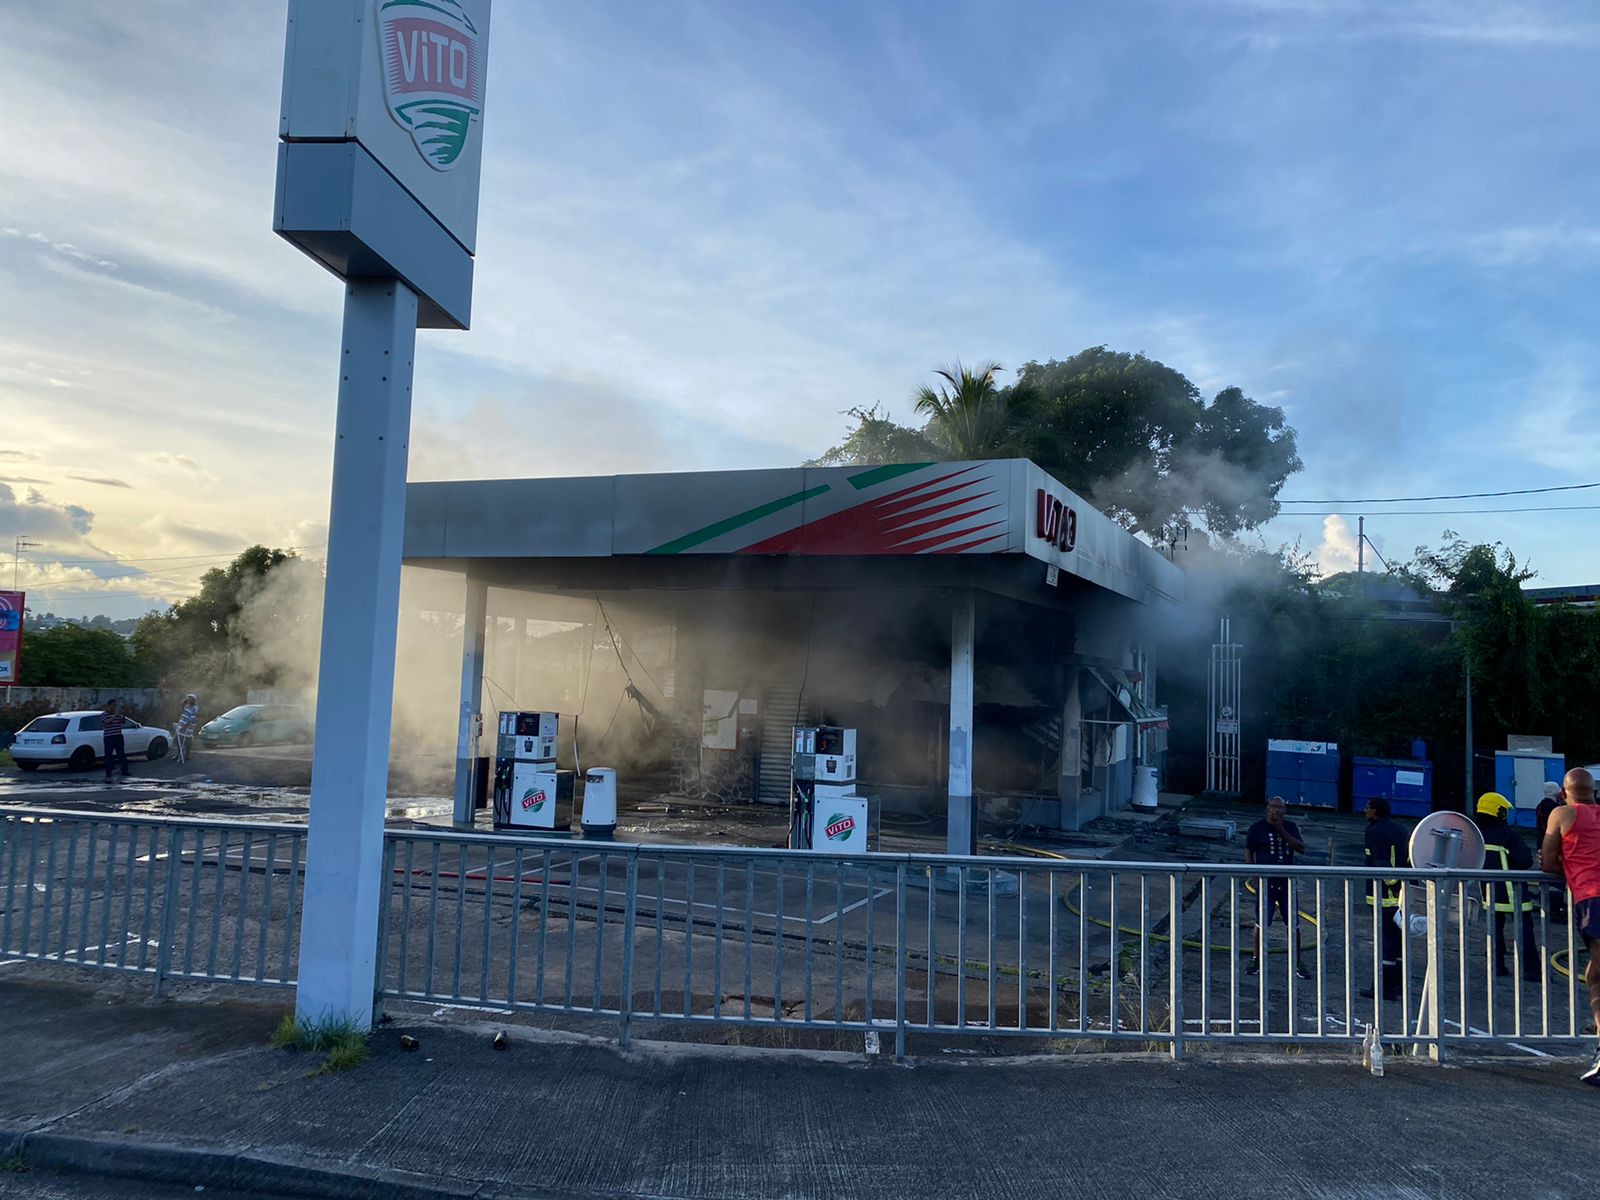     Violences nocturnes en Martinique : une station-service brûlée et un bureau de poste attaqué à la pelleteuse

